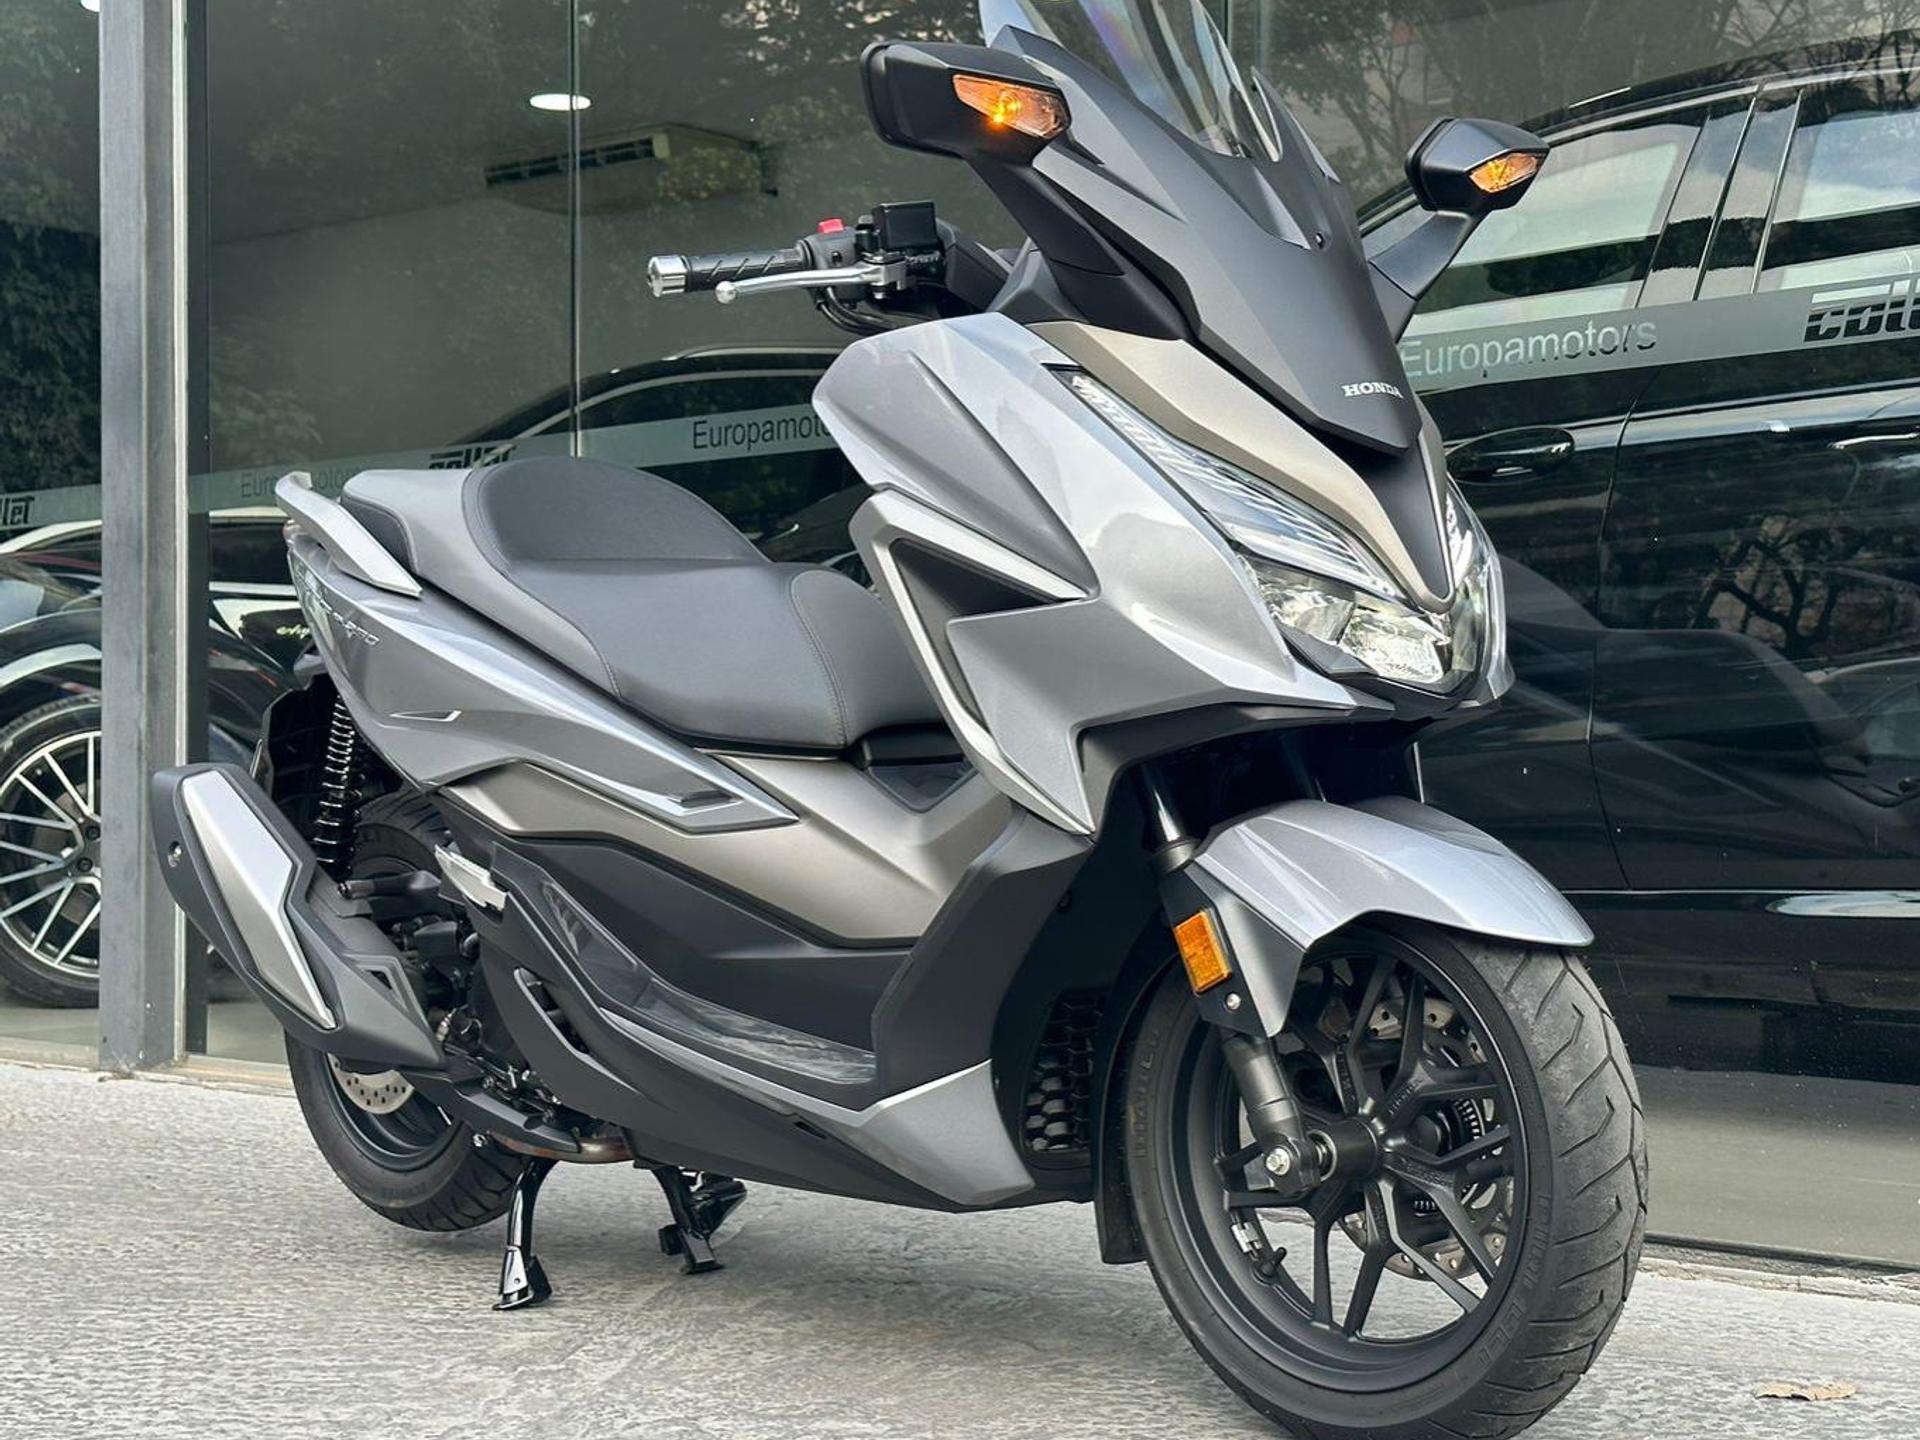 Honda Forza 350 2024